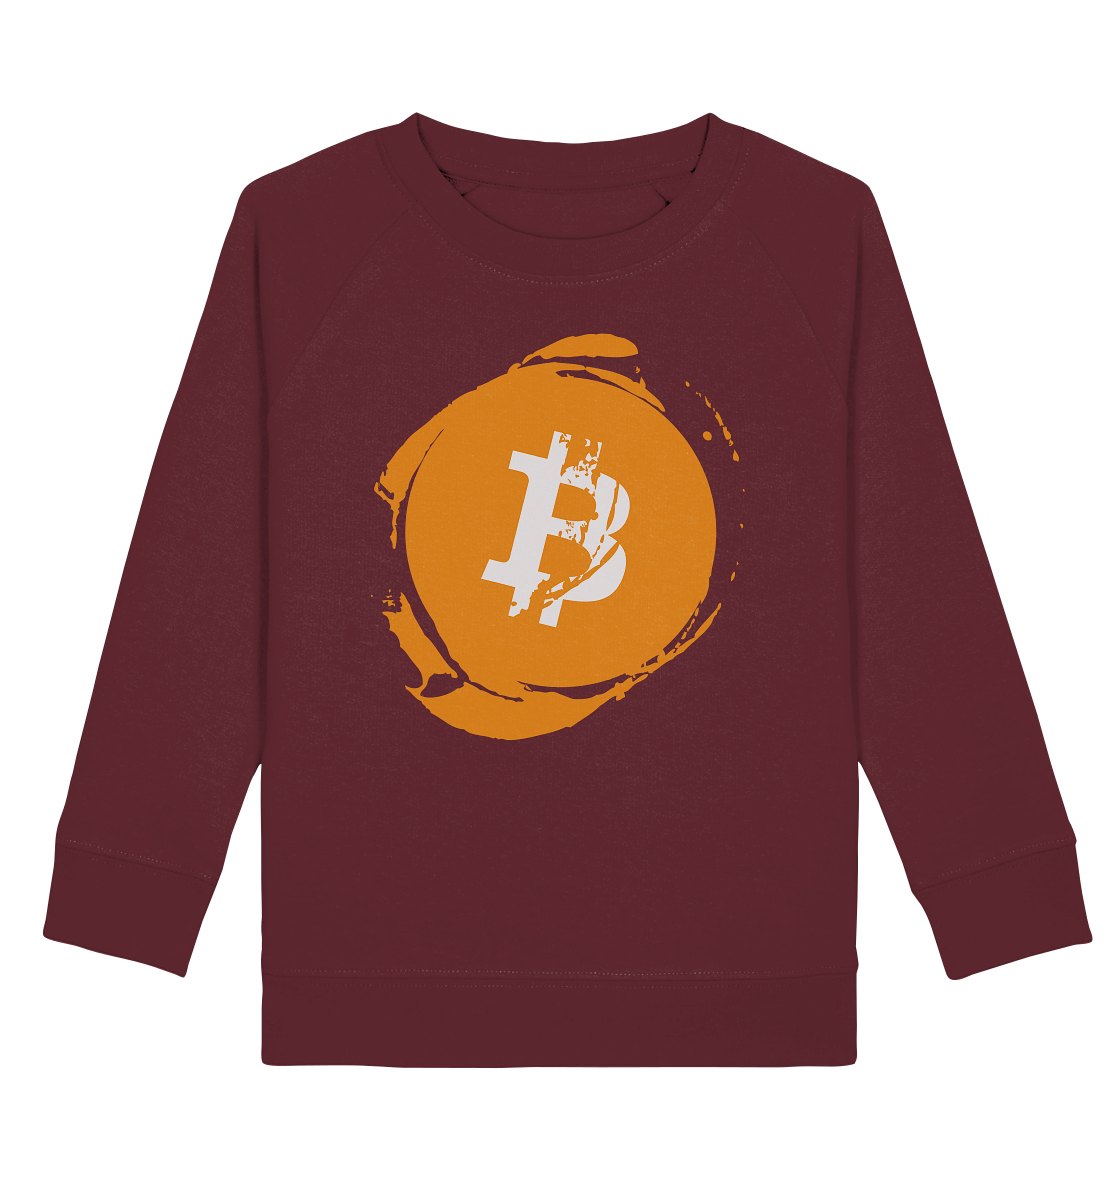 Bitcoin "Stamp"  - Kids Organic Sweatshirt